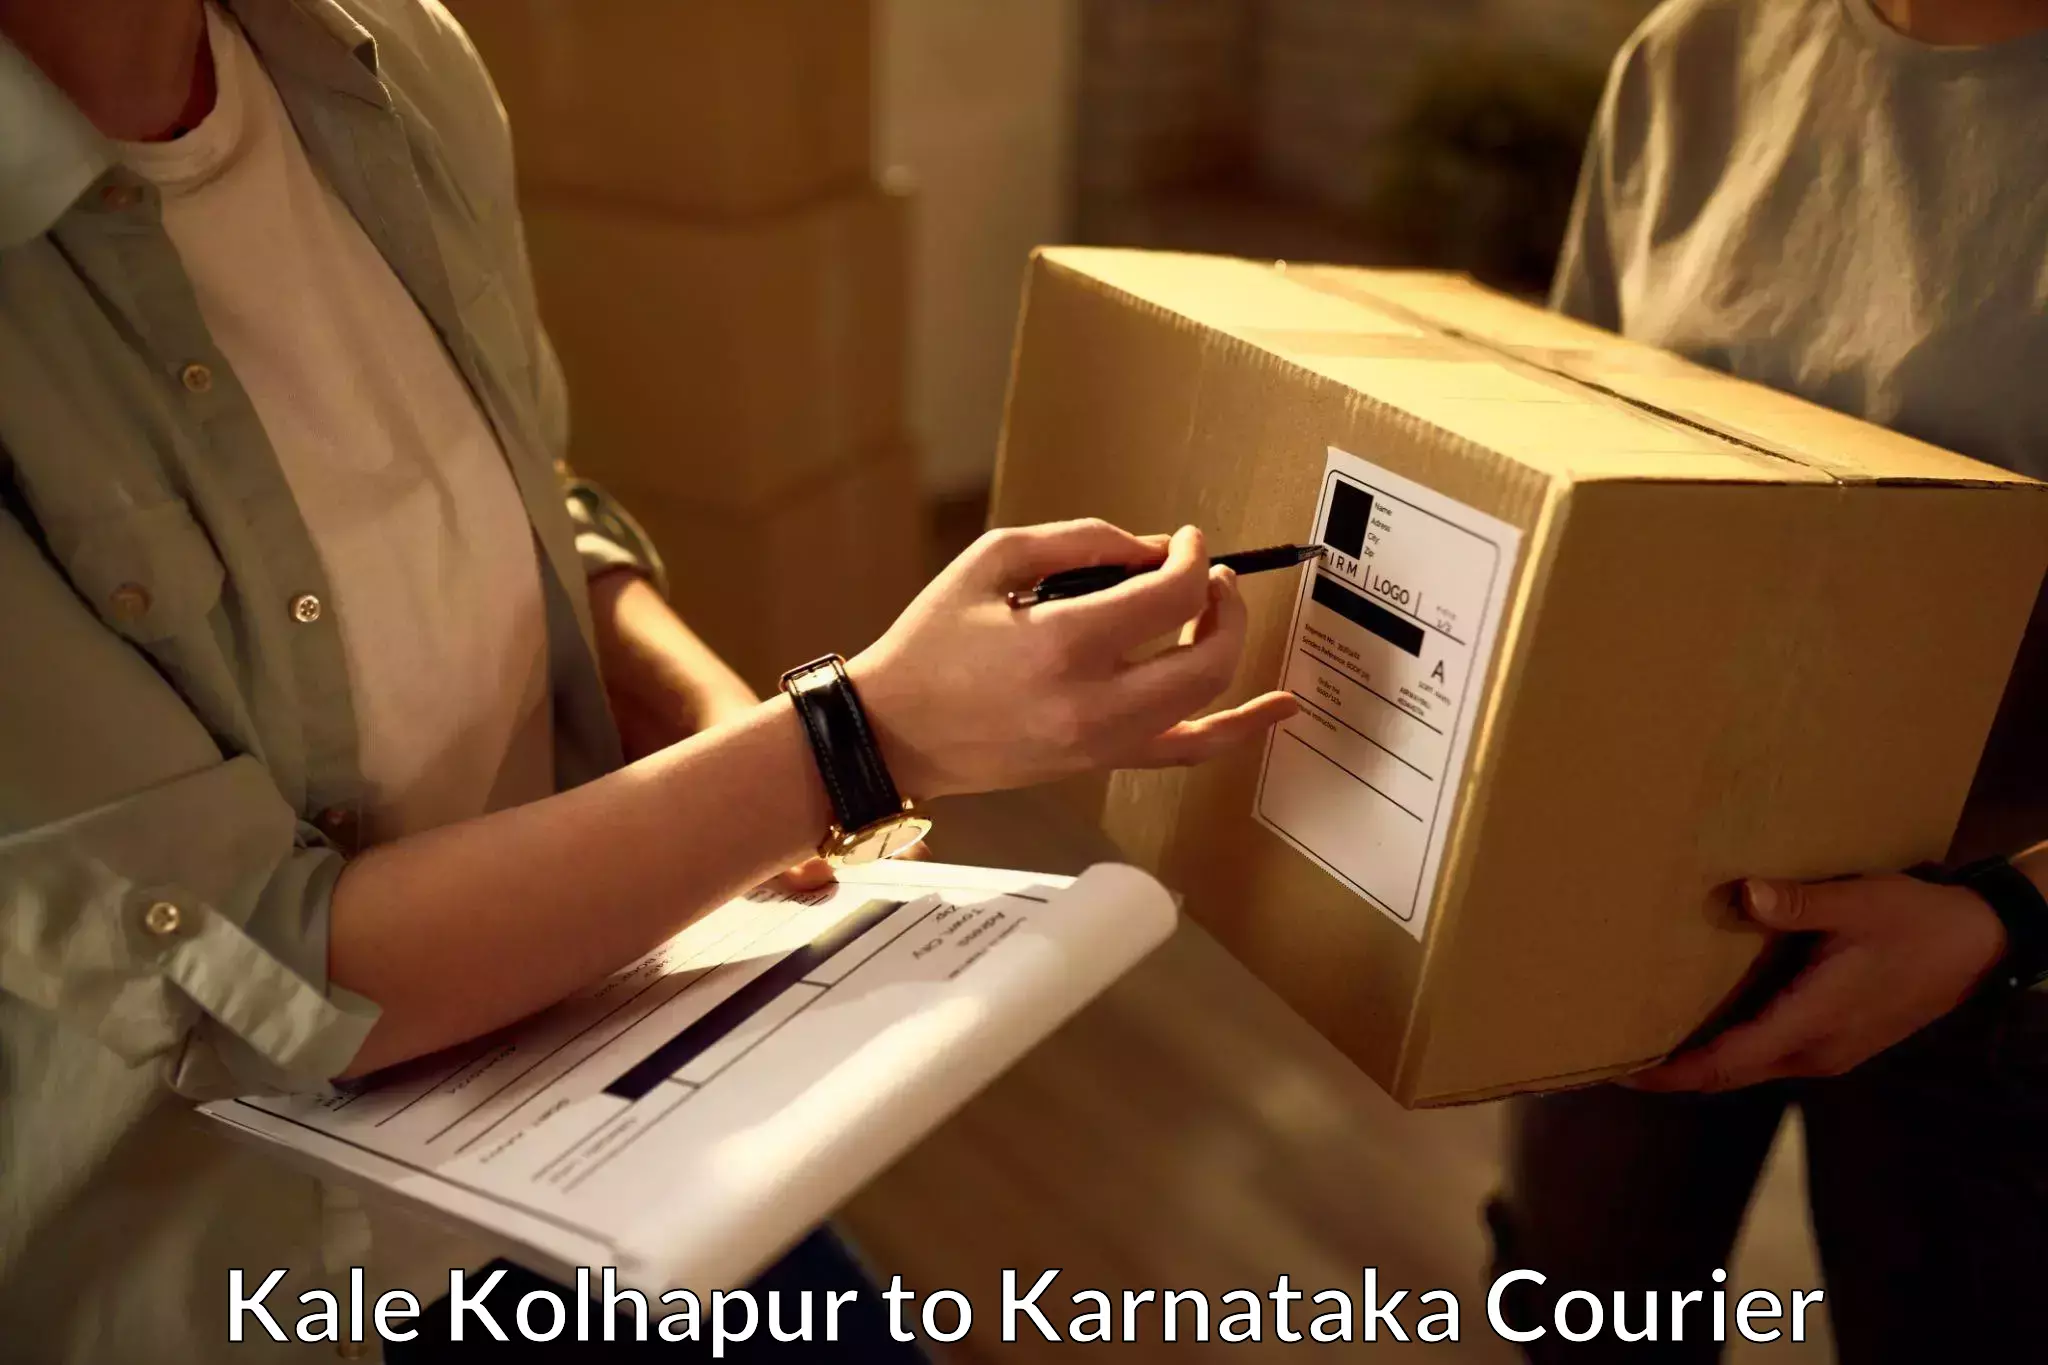 Quick booking process Kale Kolhapur to Bangarapet